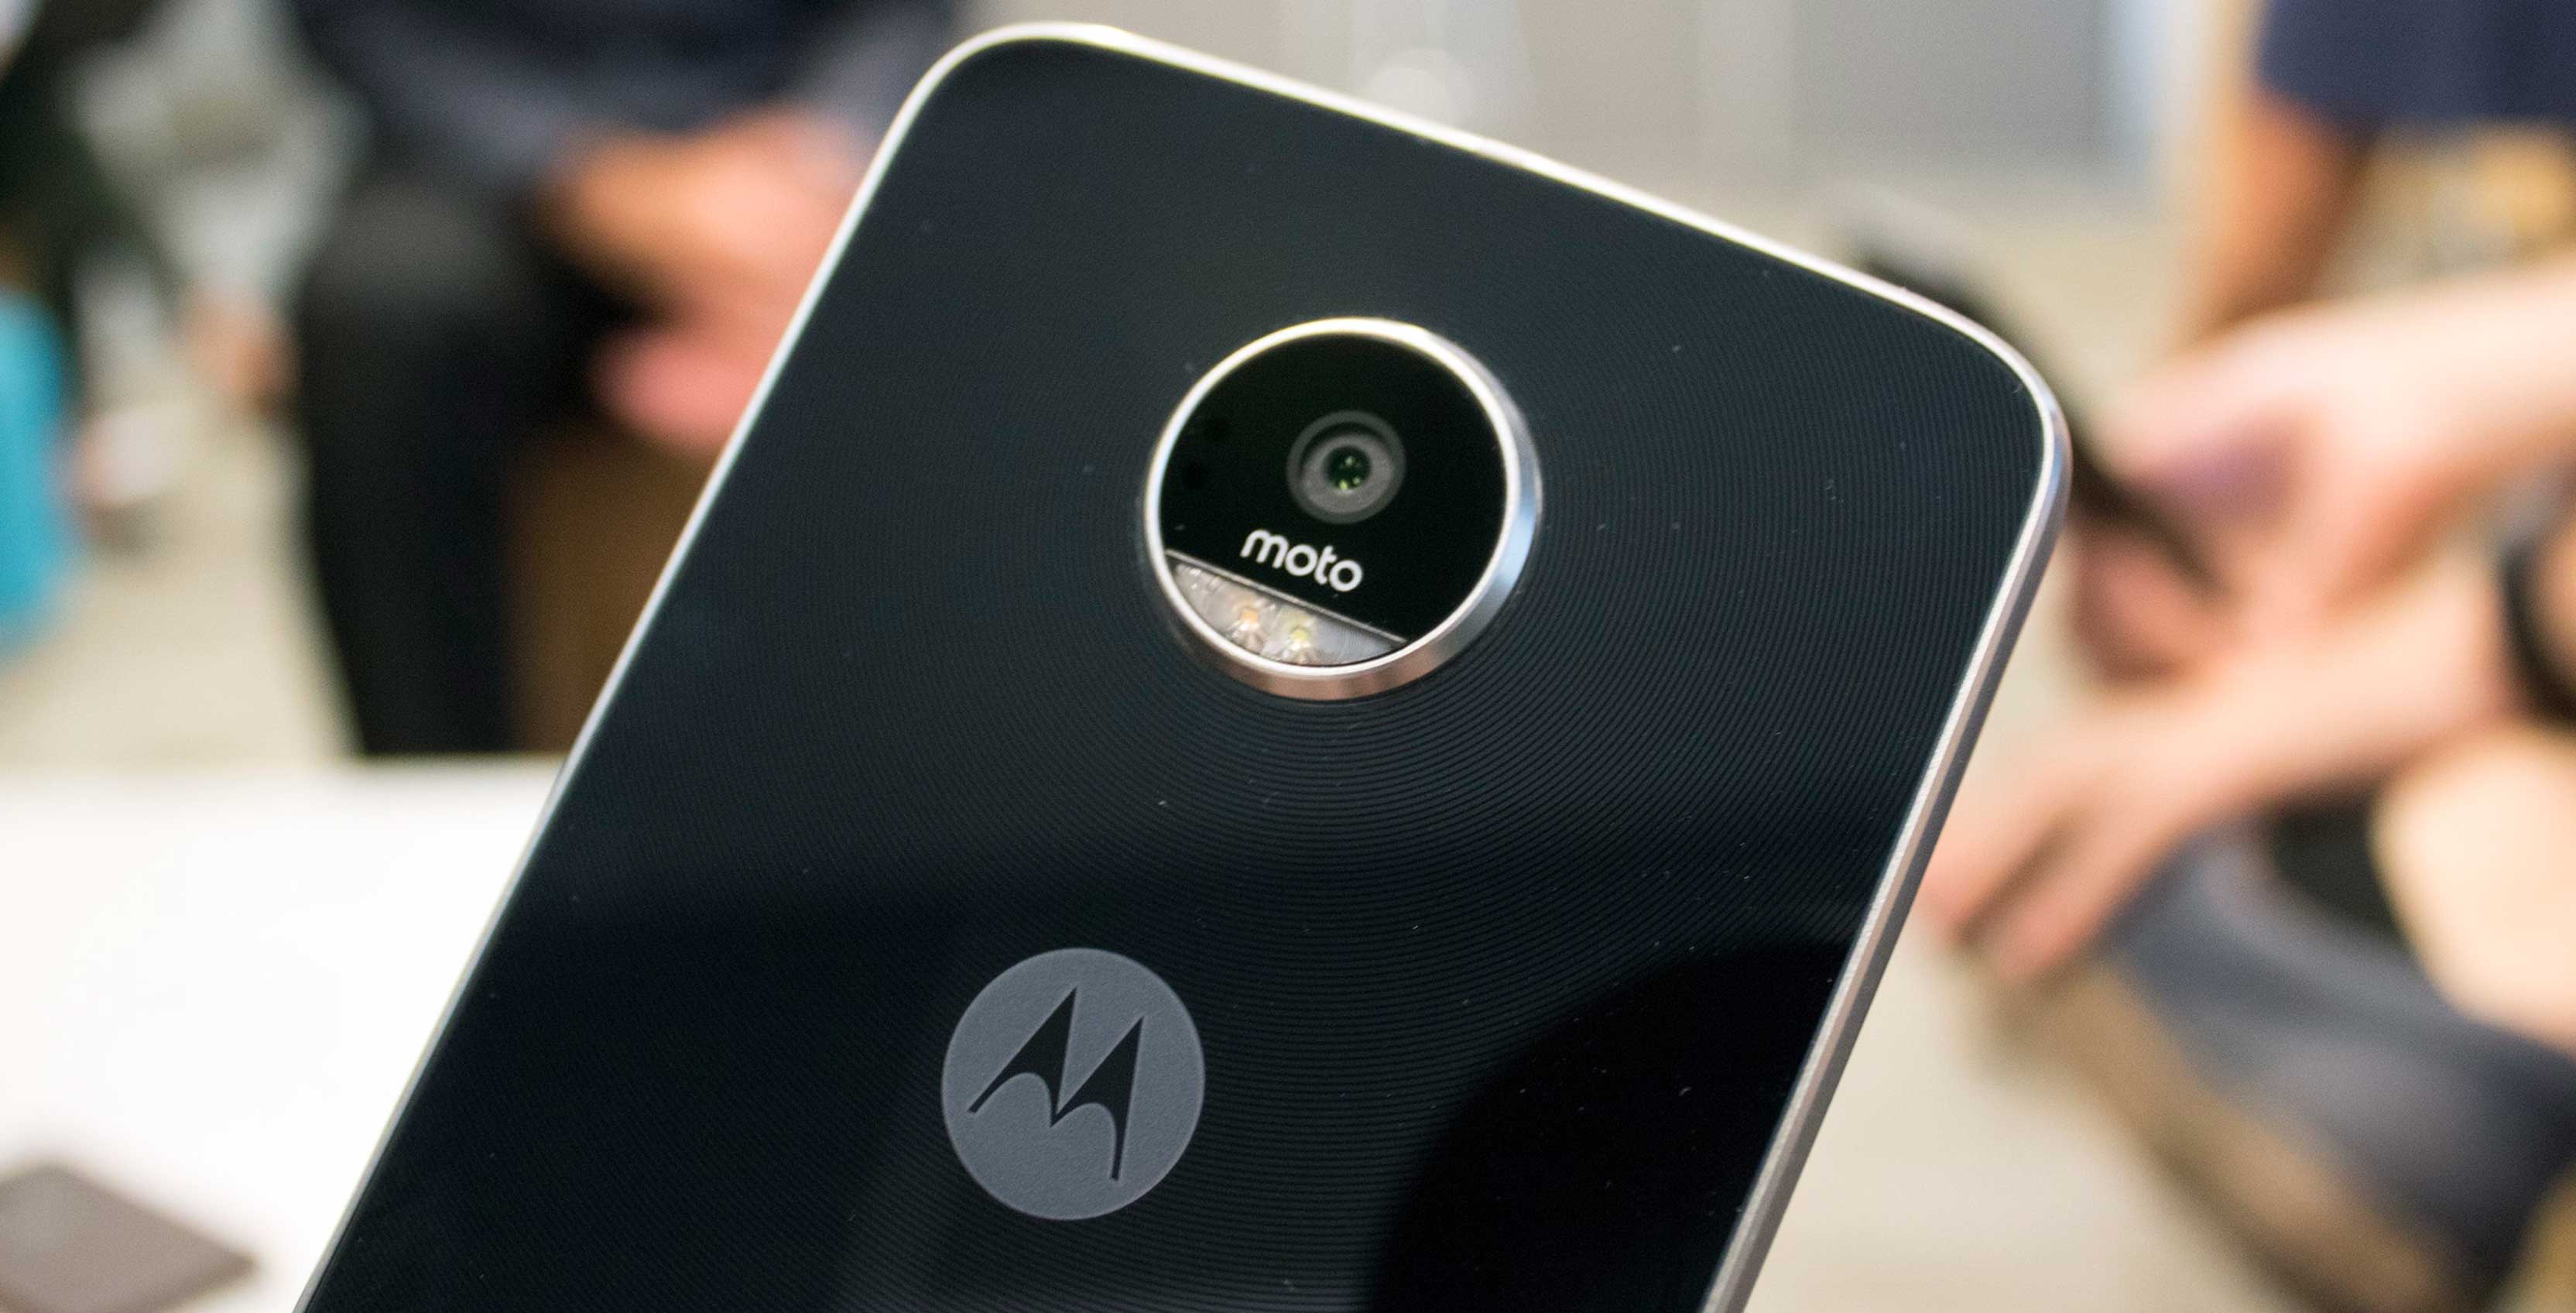 Motorola back of phone with logo